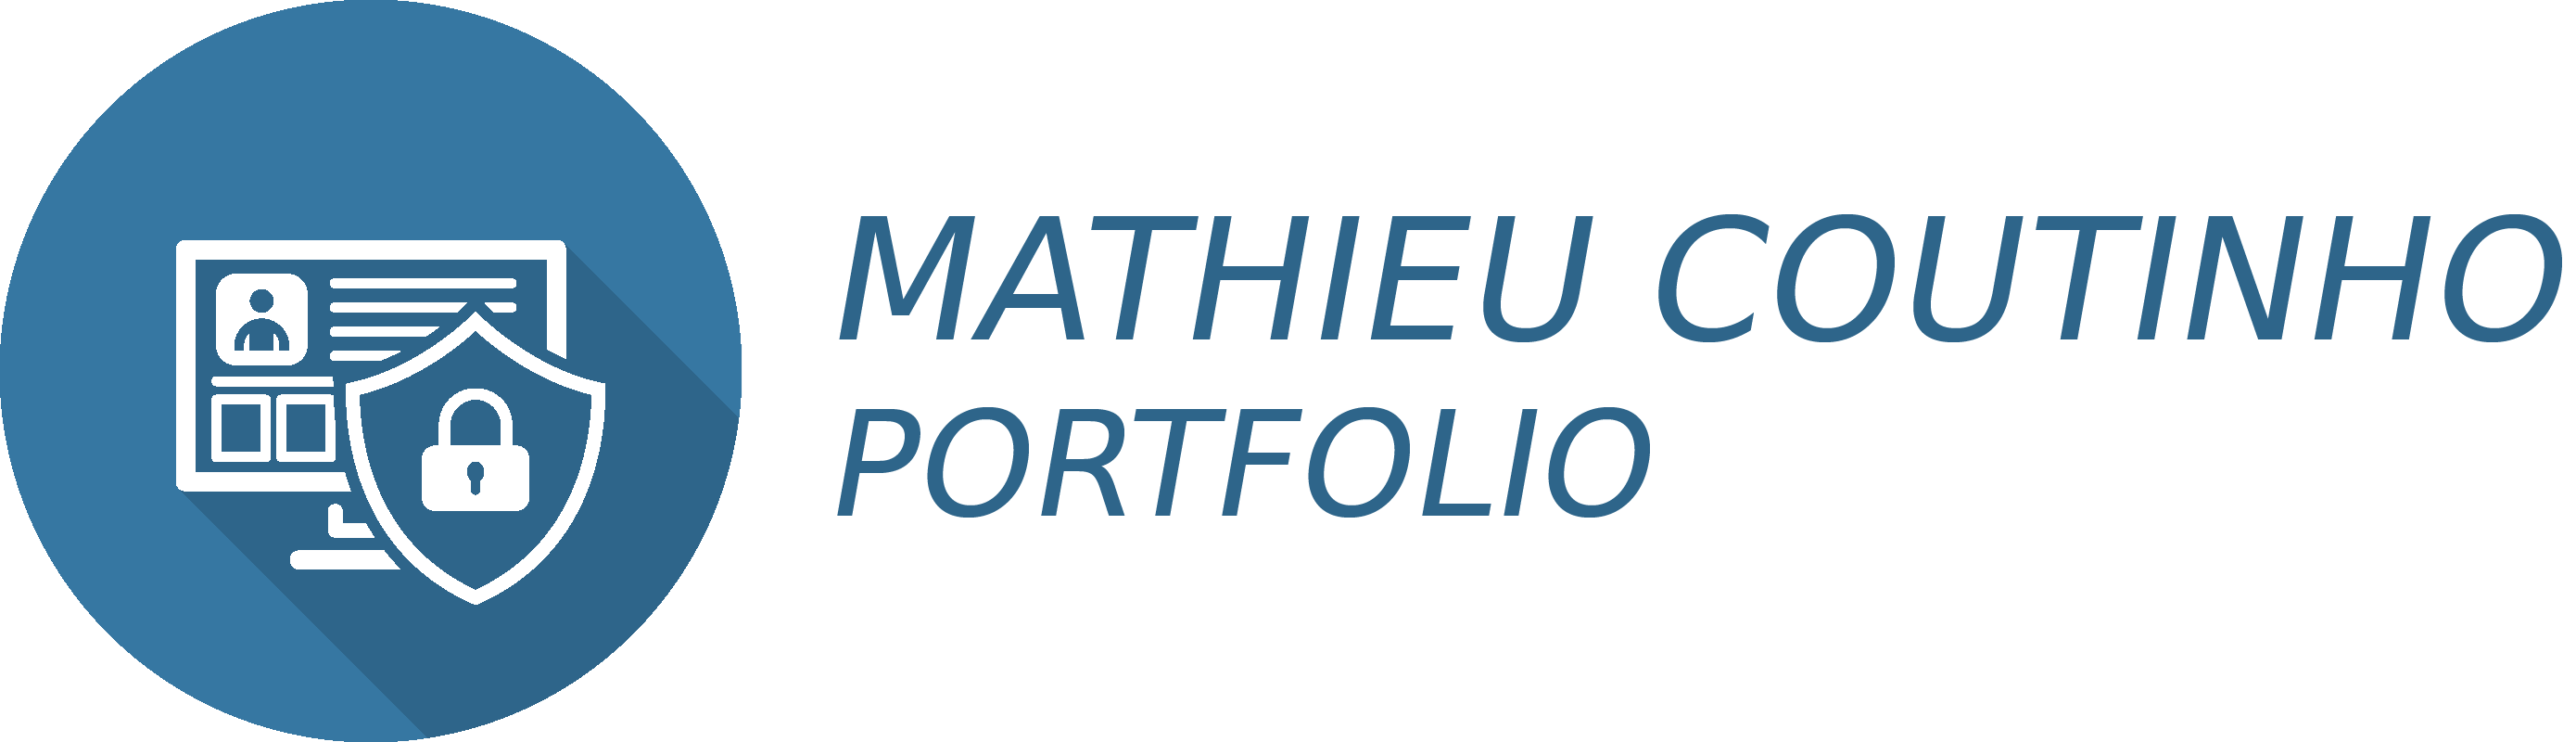 Mathieu Coutinho I Technicien supérieur Systèmes et Réseaux